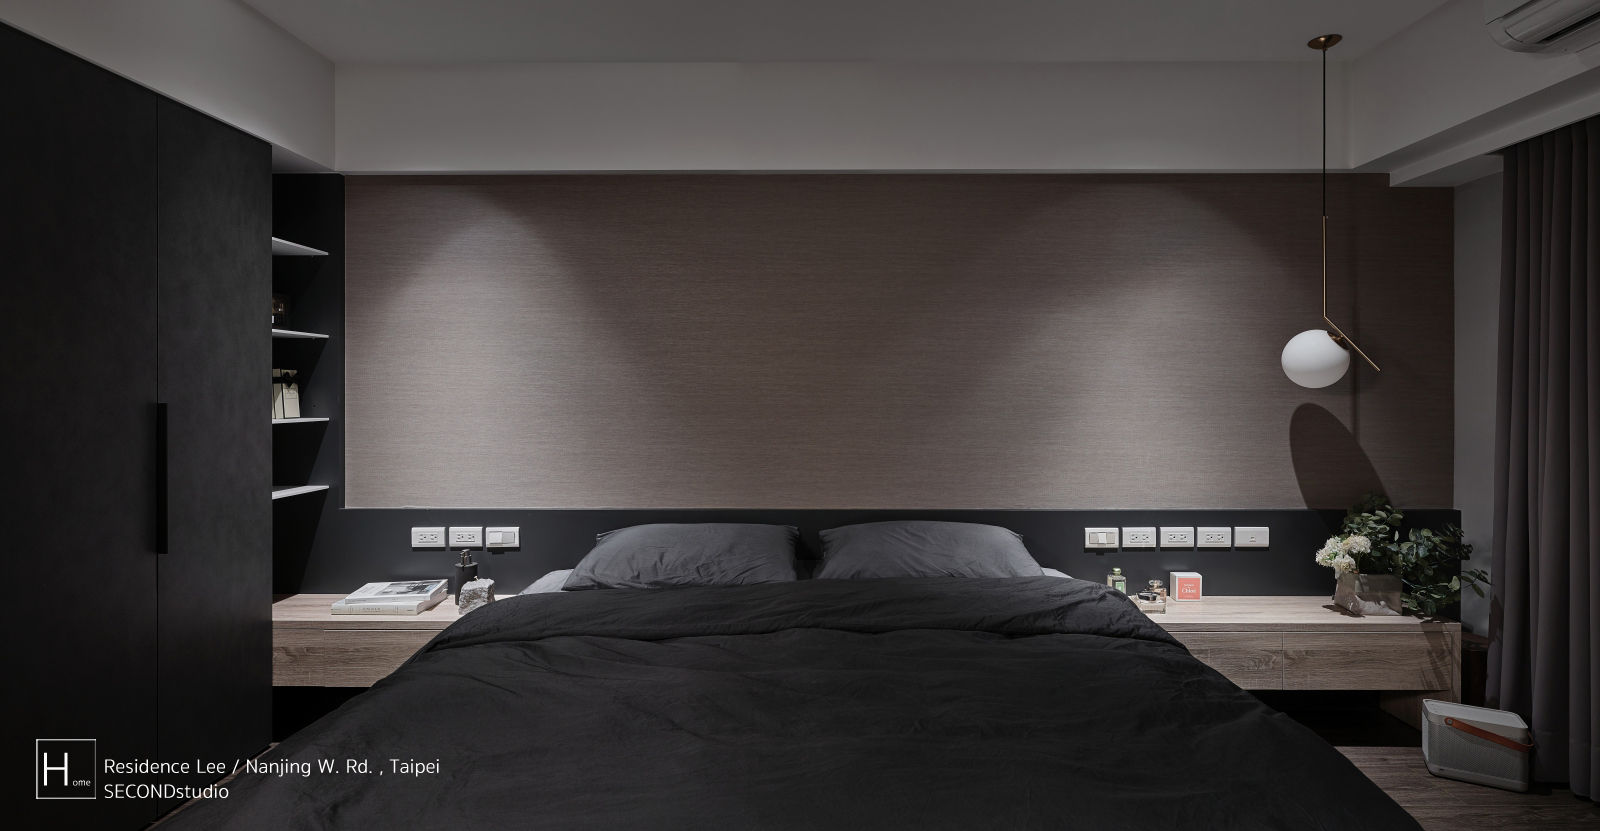 暗色調並帶有沈穩寧靜氛圍的住家設計, SECONDstudio SECONDstudio Modern style bedroom